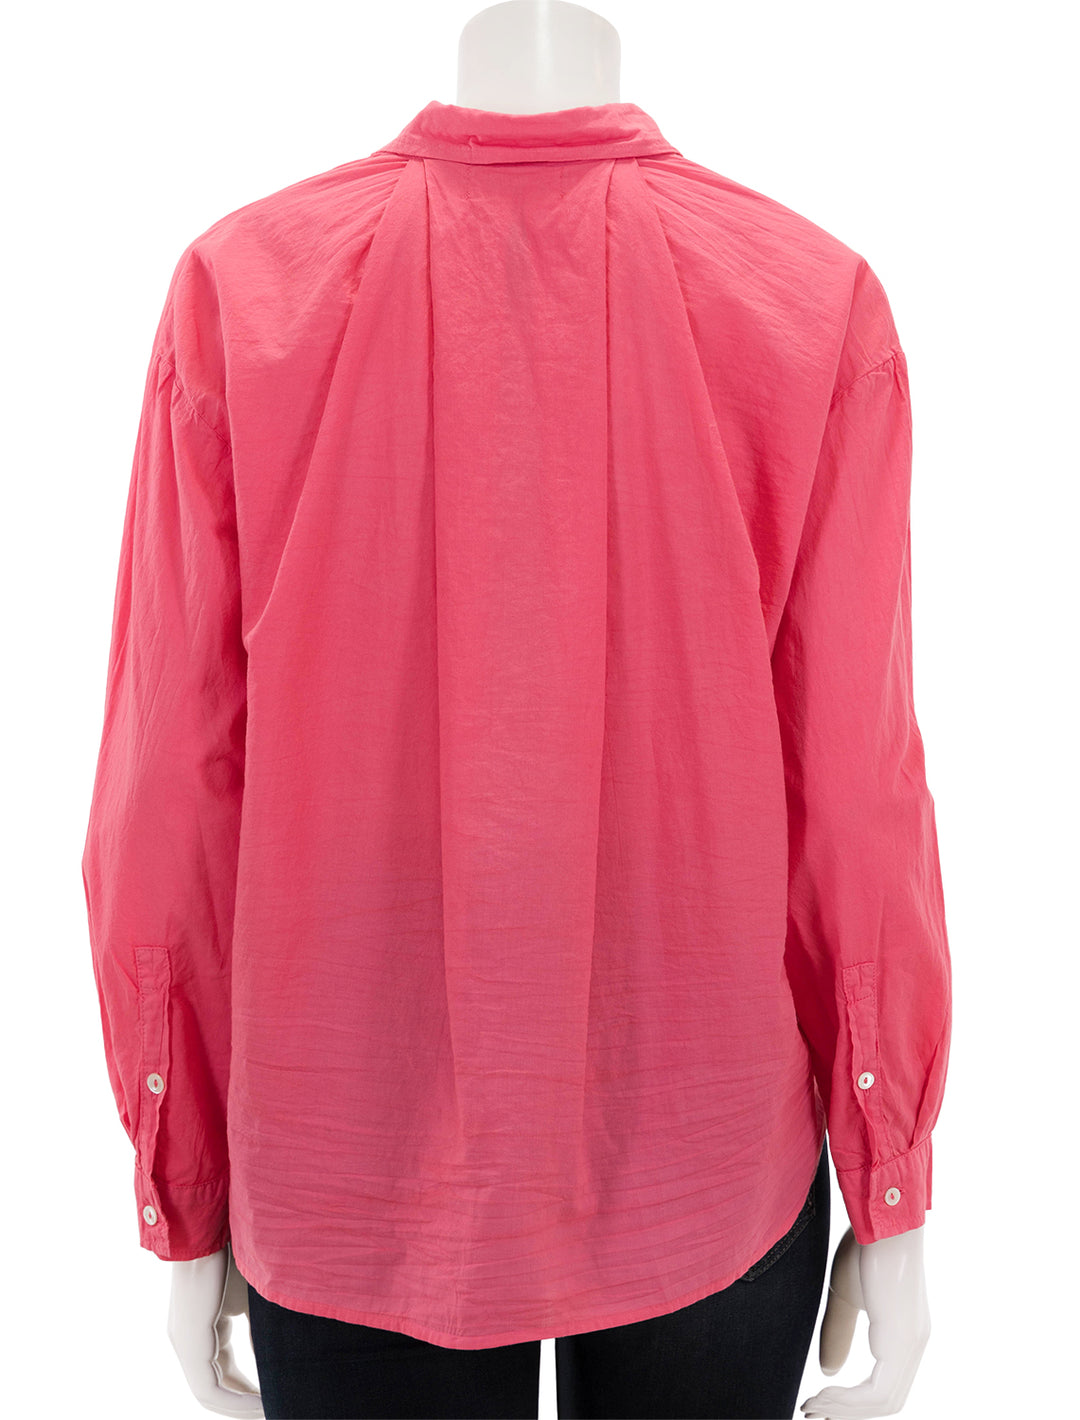 Back view of Velvet Brand's devyn shirt in rosebud.